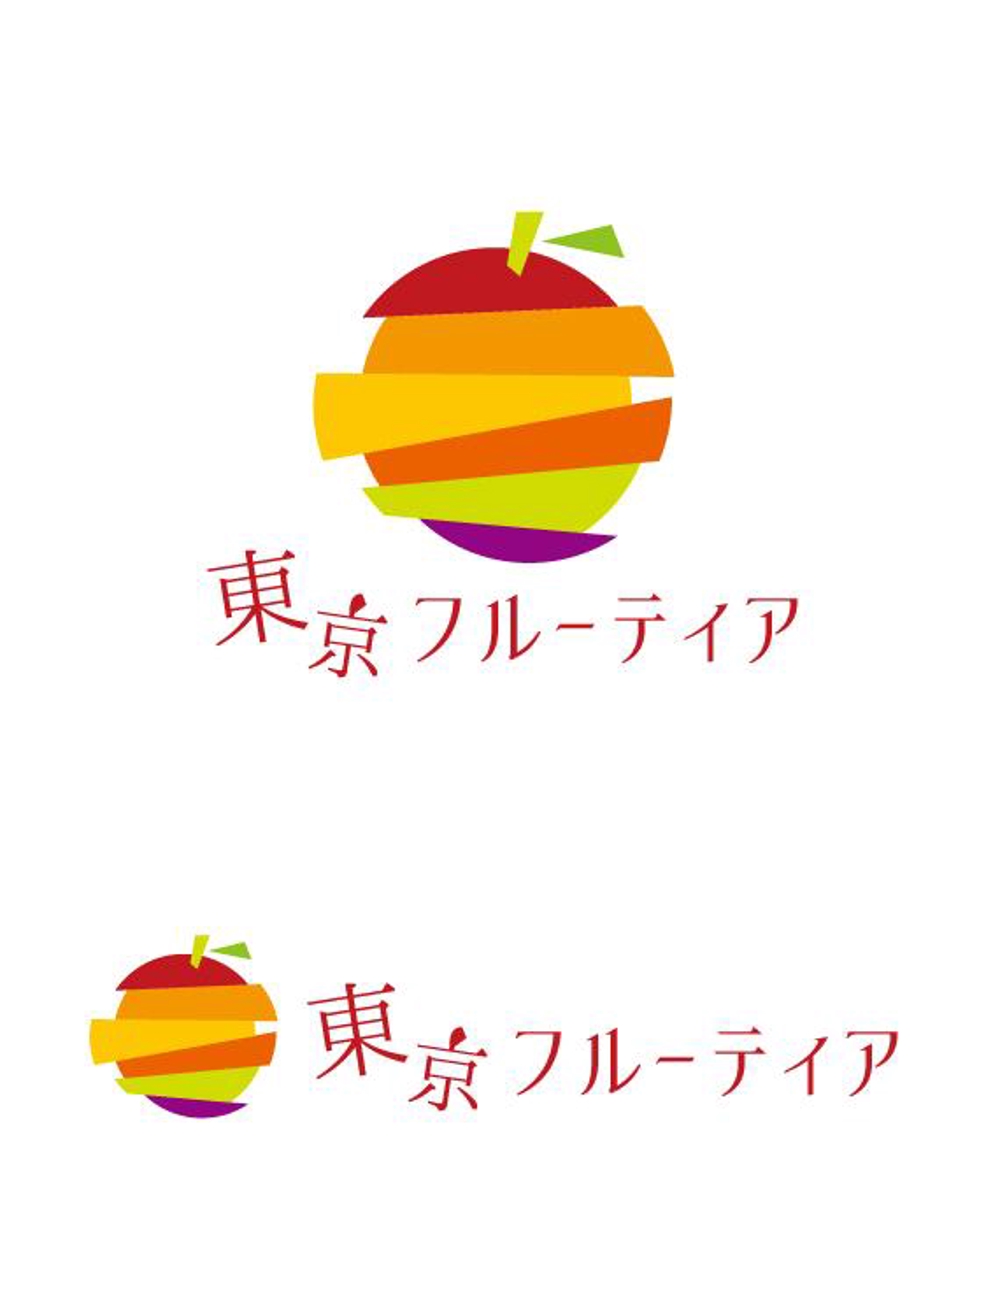 TF_logo1.jpg